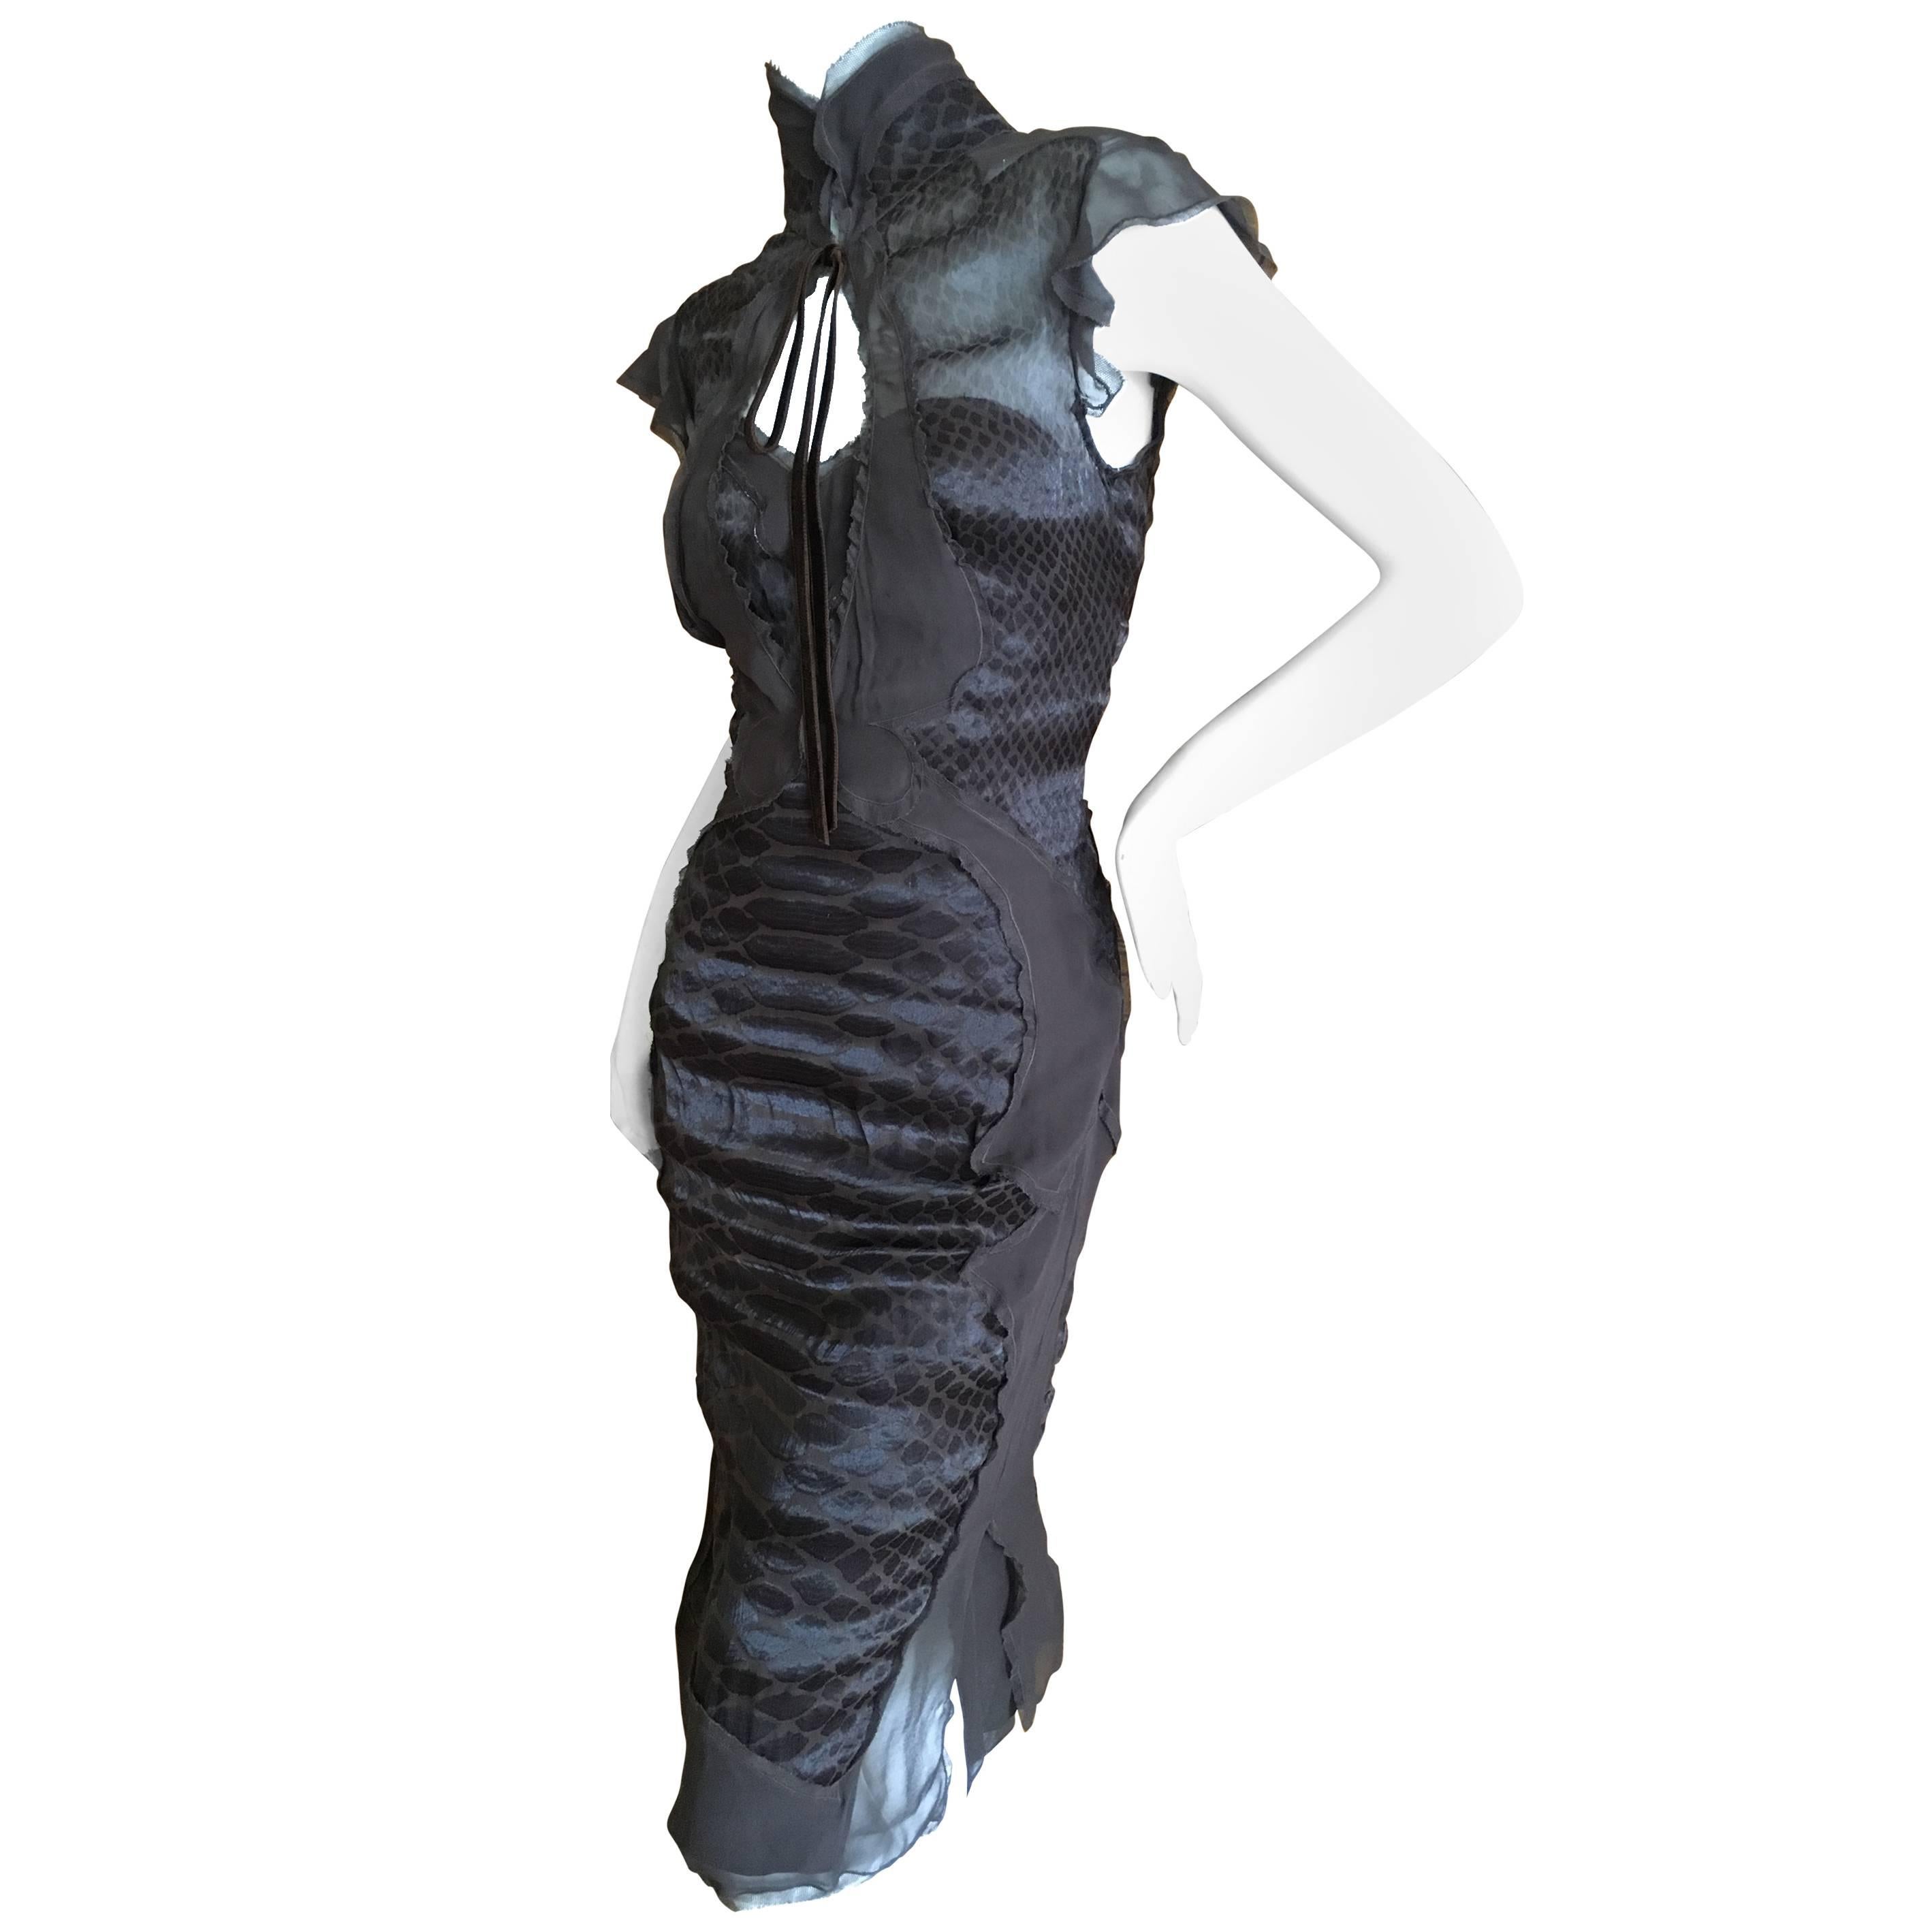 Yves Saint Laurent by Tom Ford Sheer Reptile Print Dress & Slip For Sale